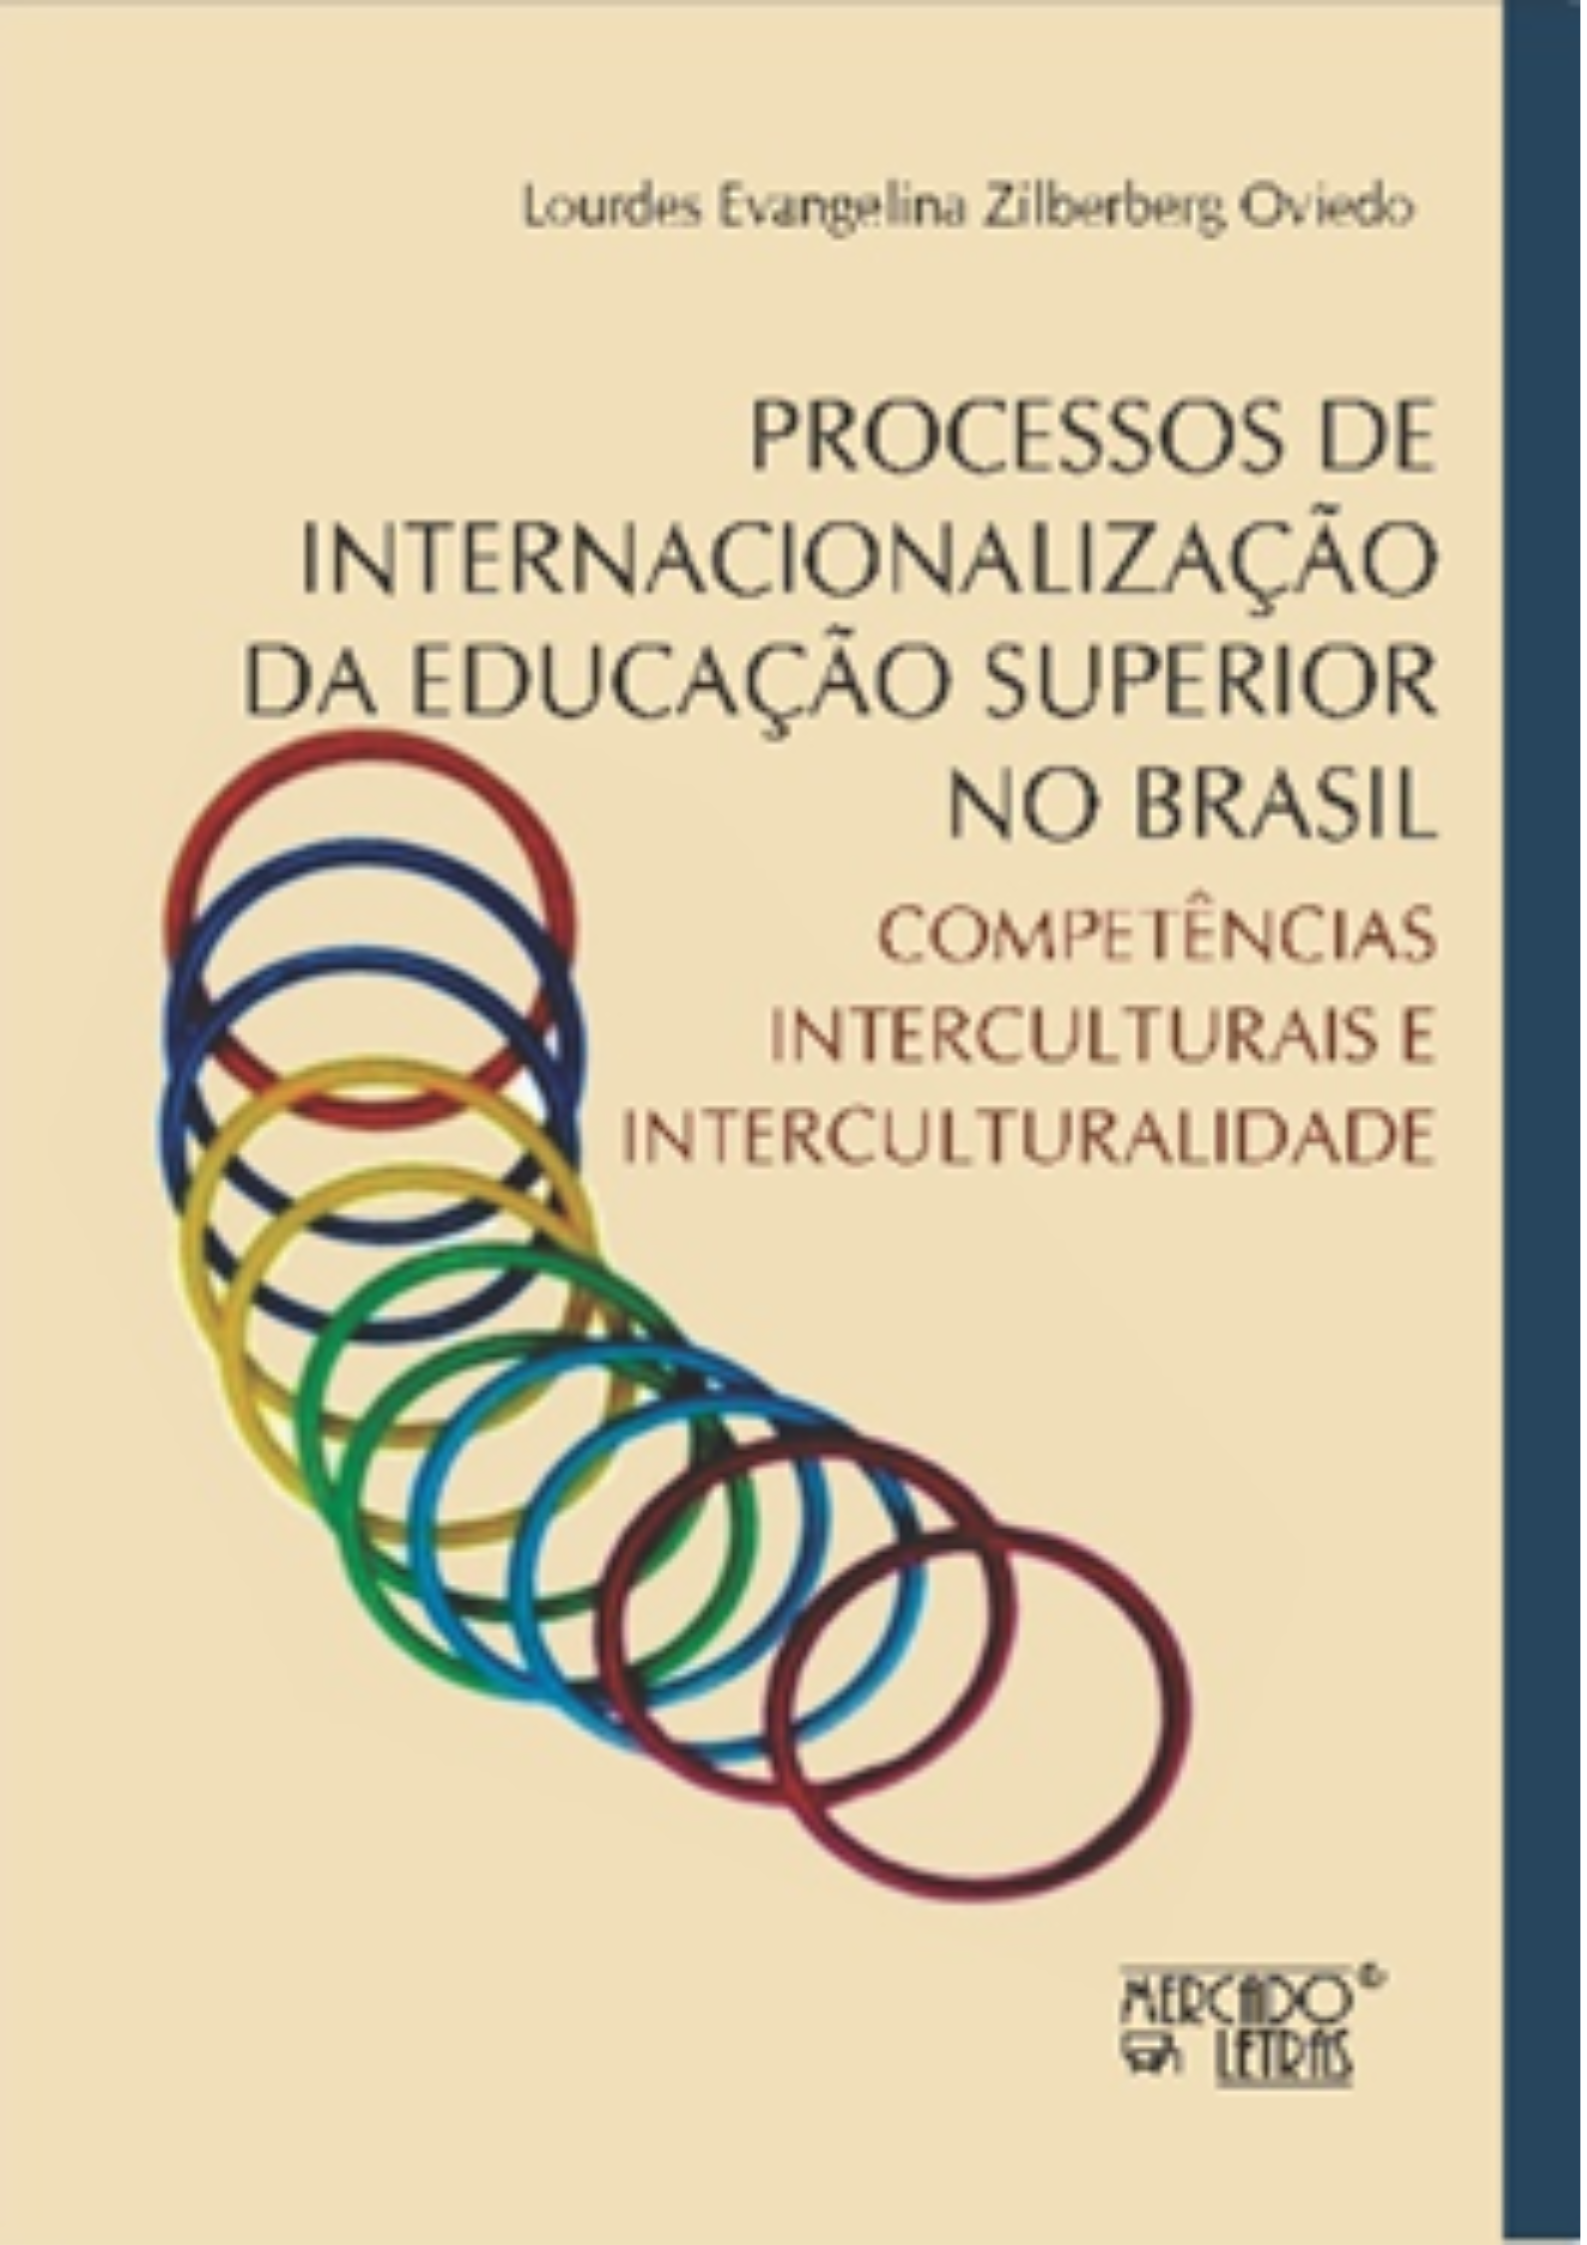 Capa do livro de Lourdes Evangelista sobre processos de internaciolização da educação superior no Brasil,  da editora Mercado das Letras, tendo um desenho de vários círculos coloridos